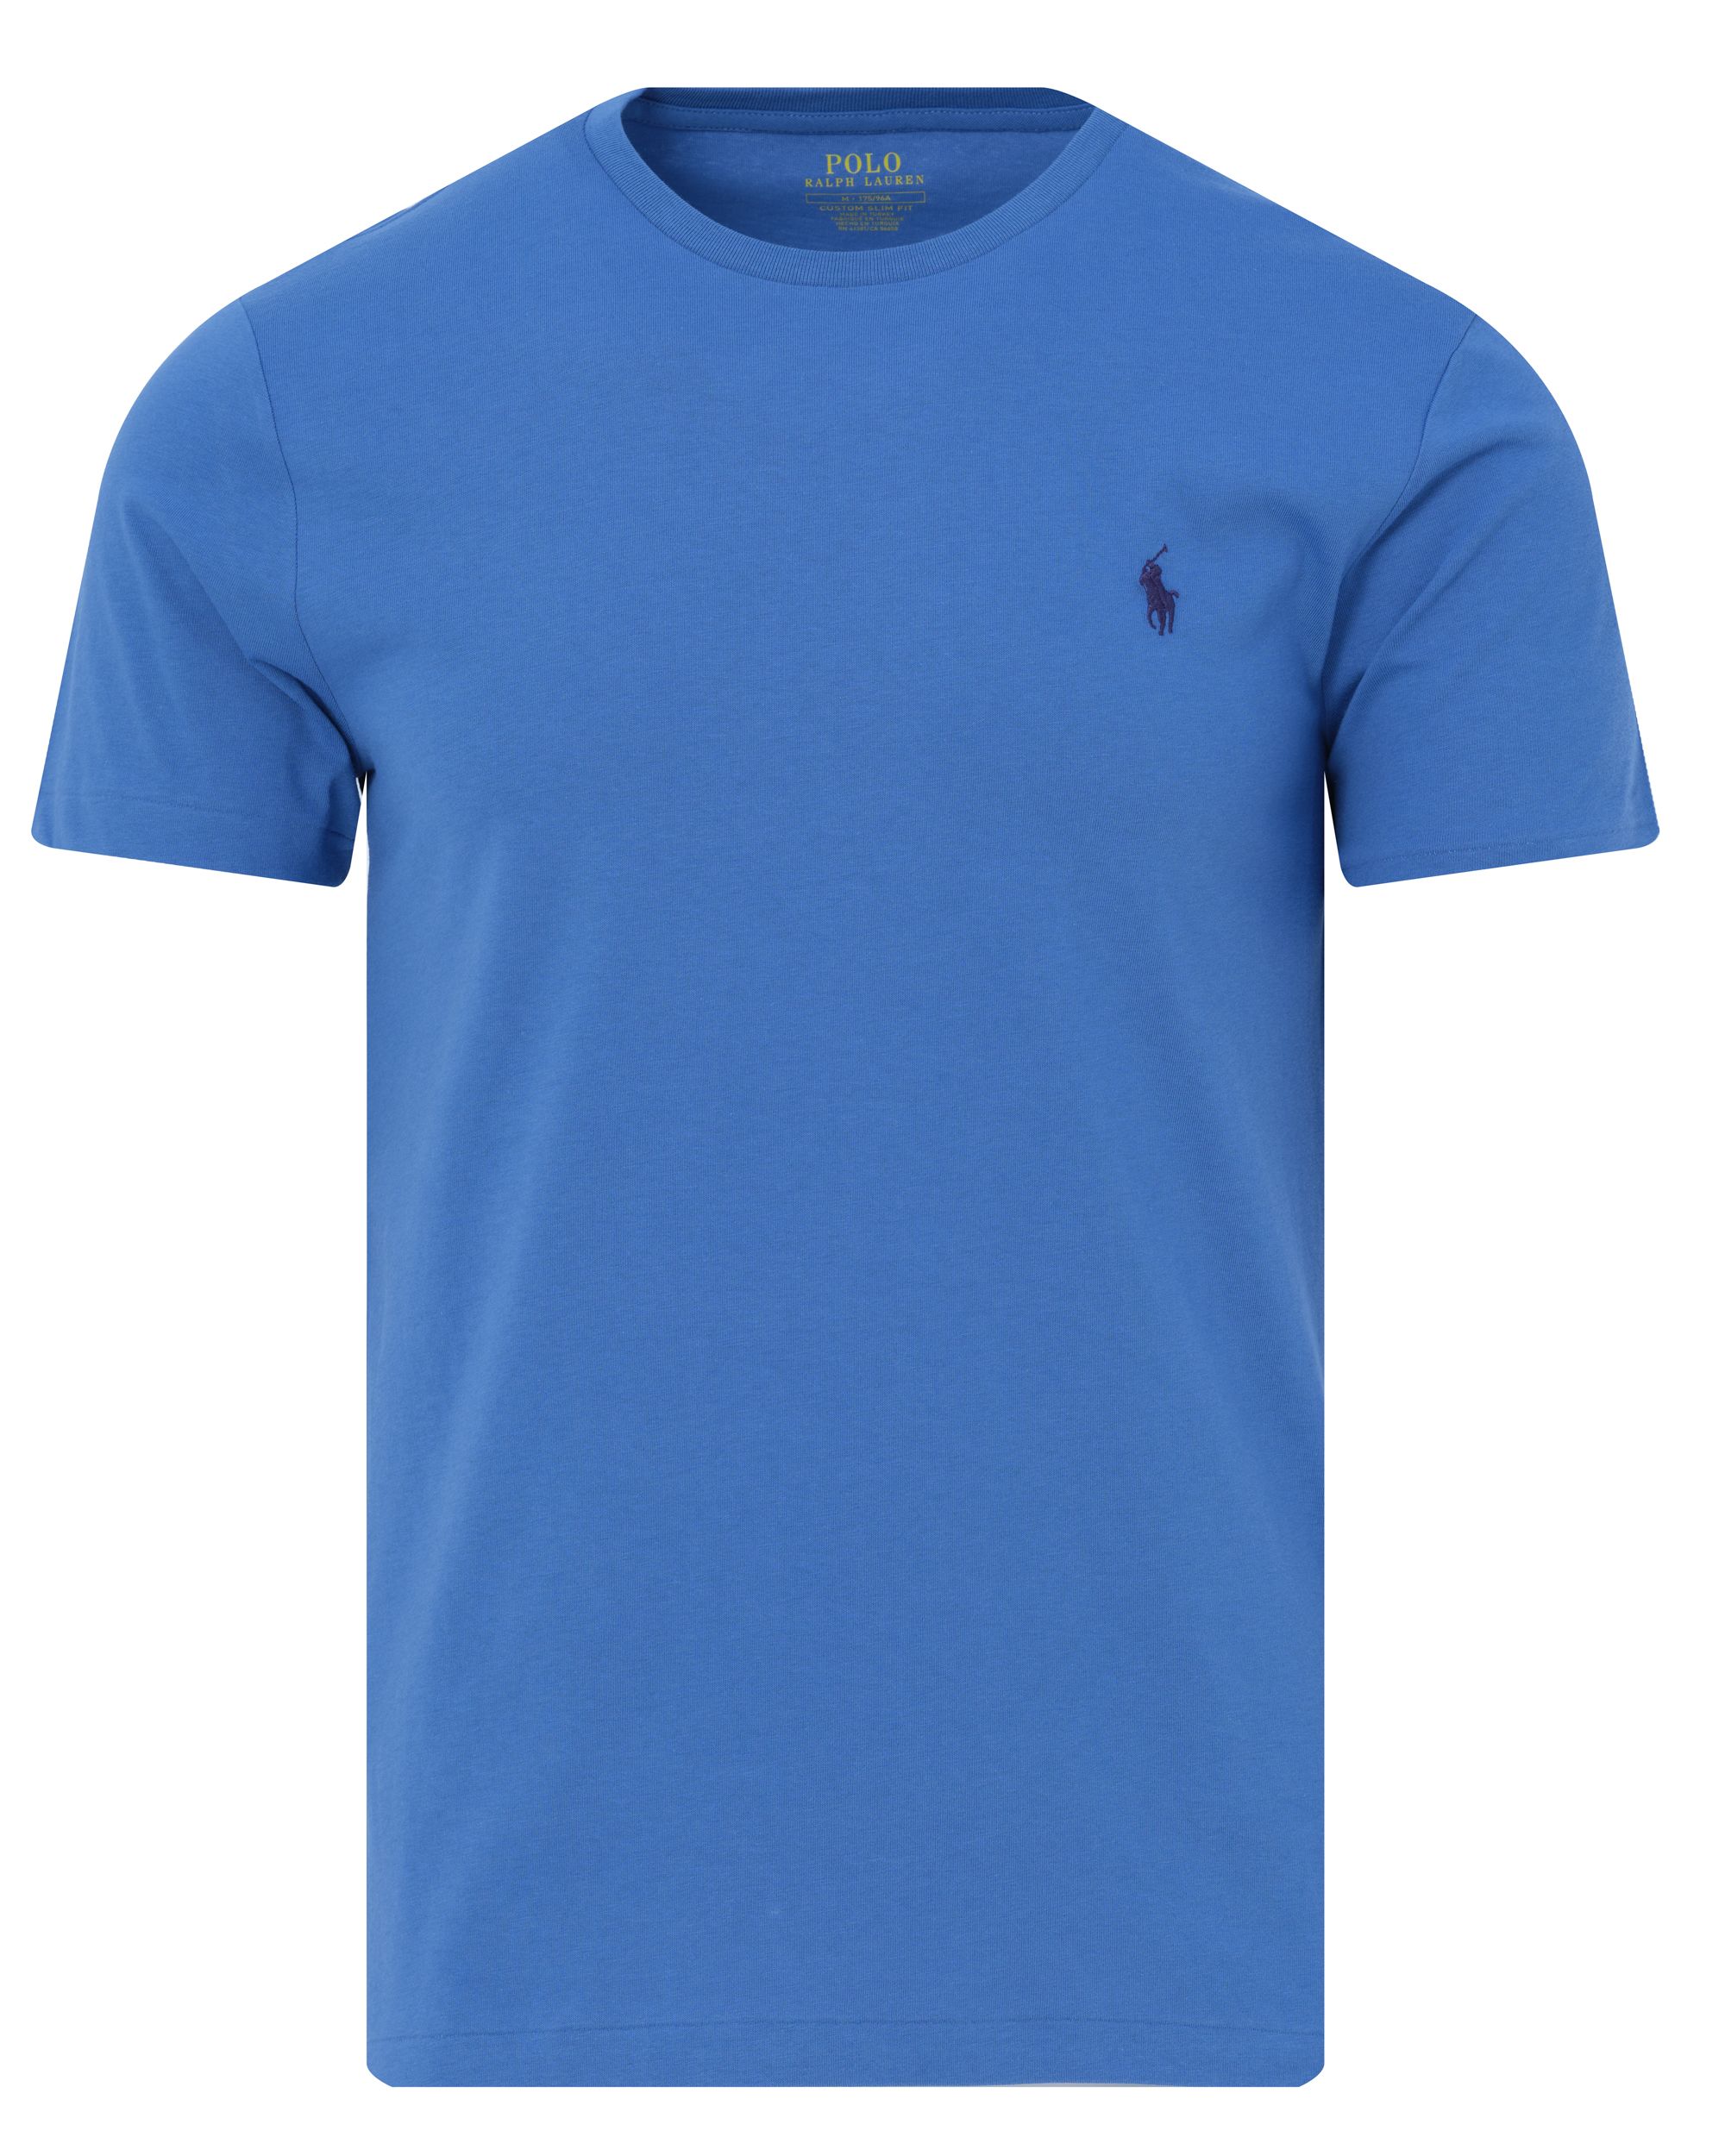 Polo Ralph Lauren T-shirt KM Blauw 088369-001-L